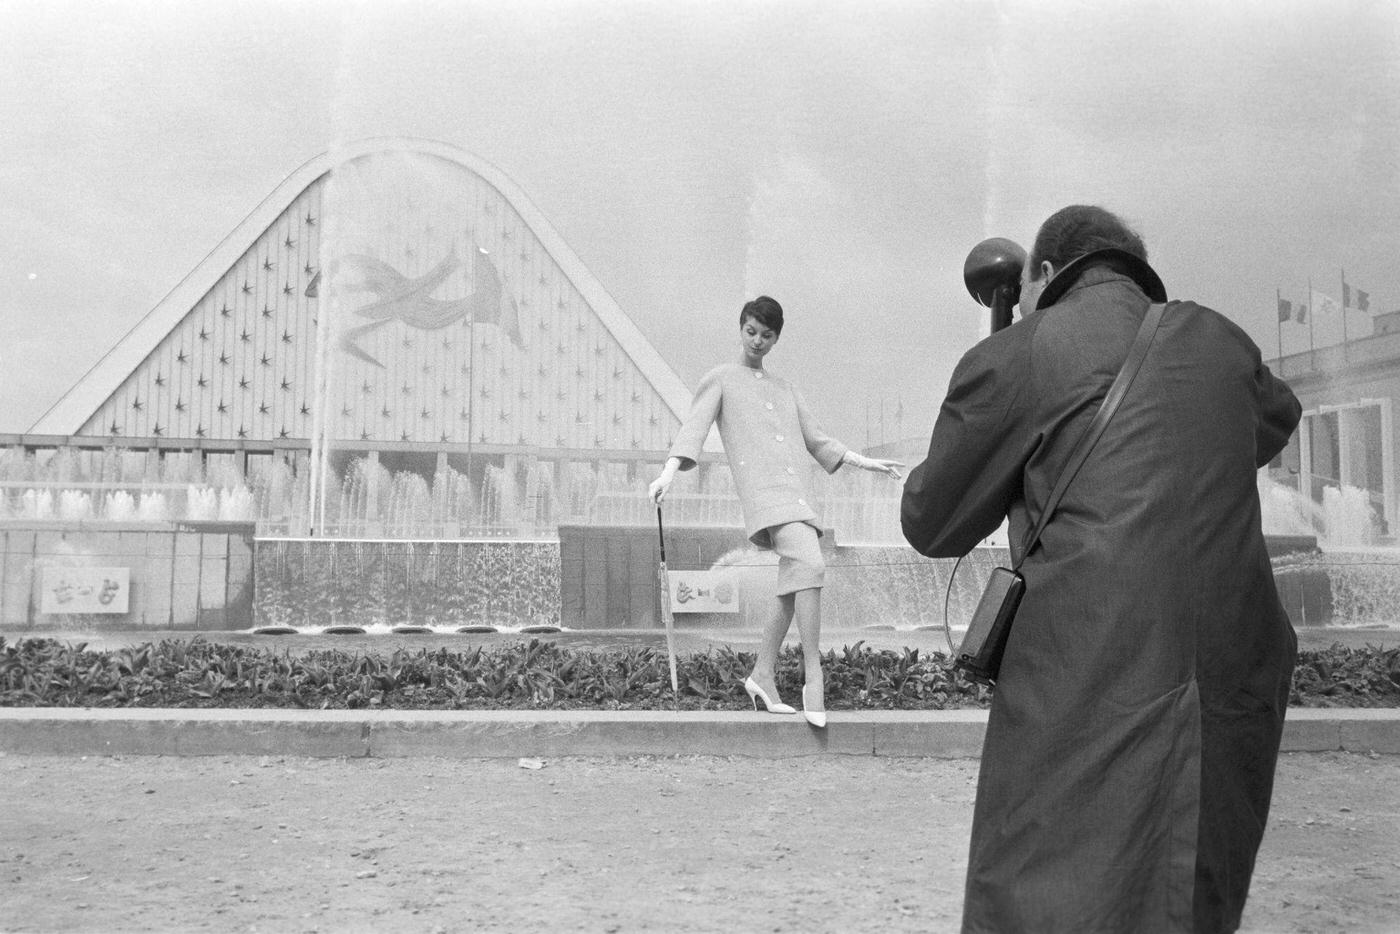 Brussels World's Fair, 1958